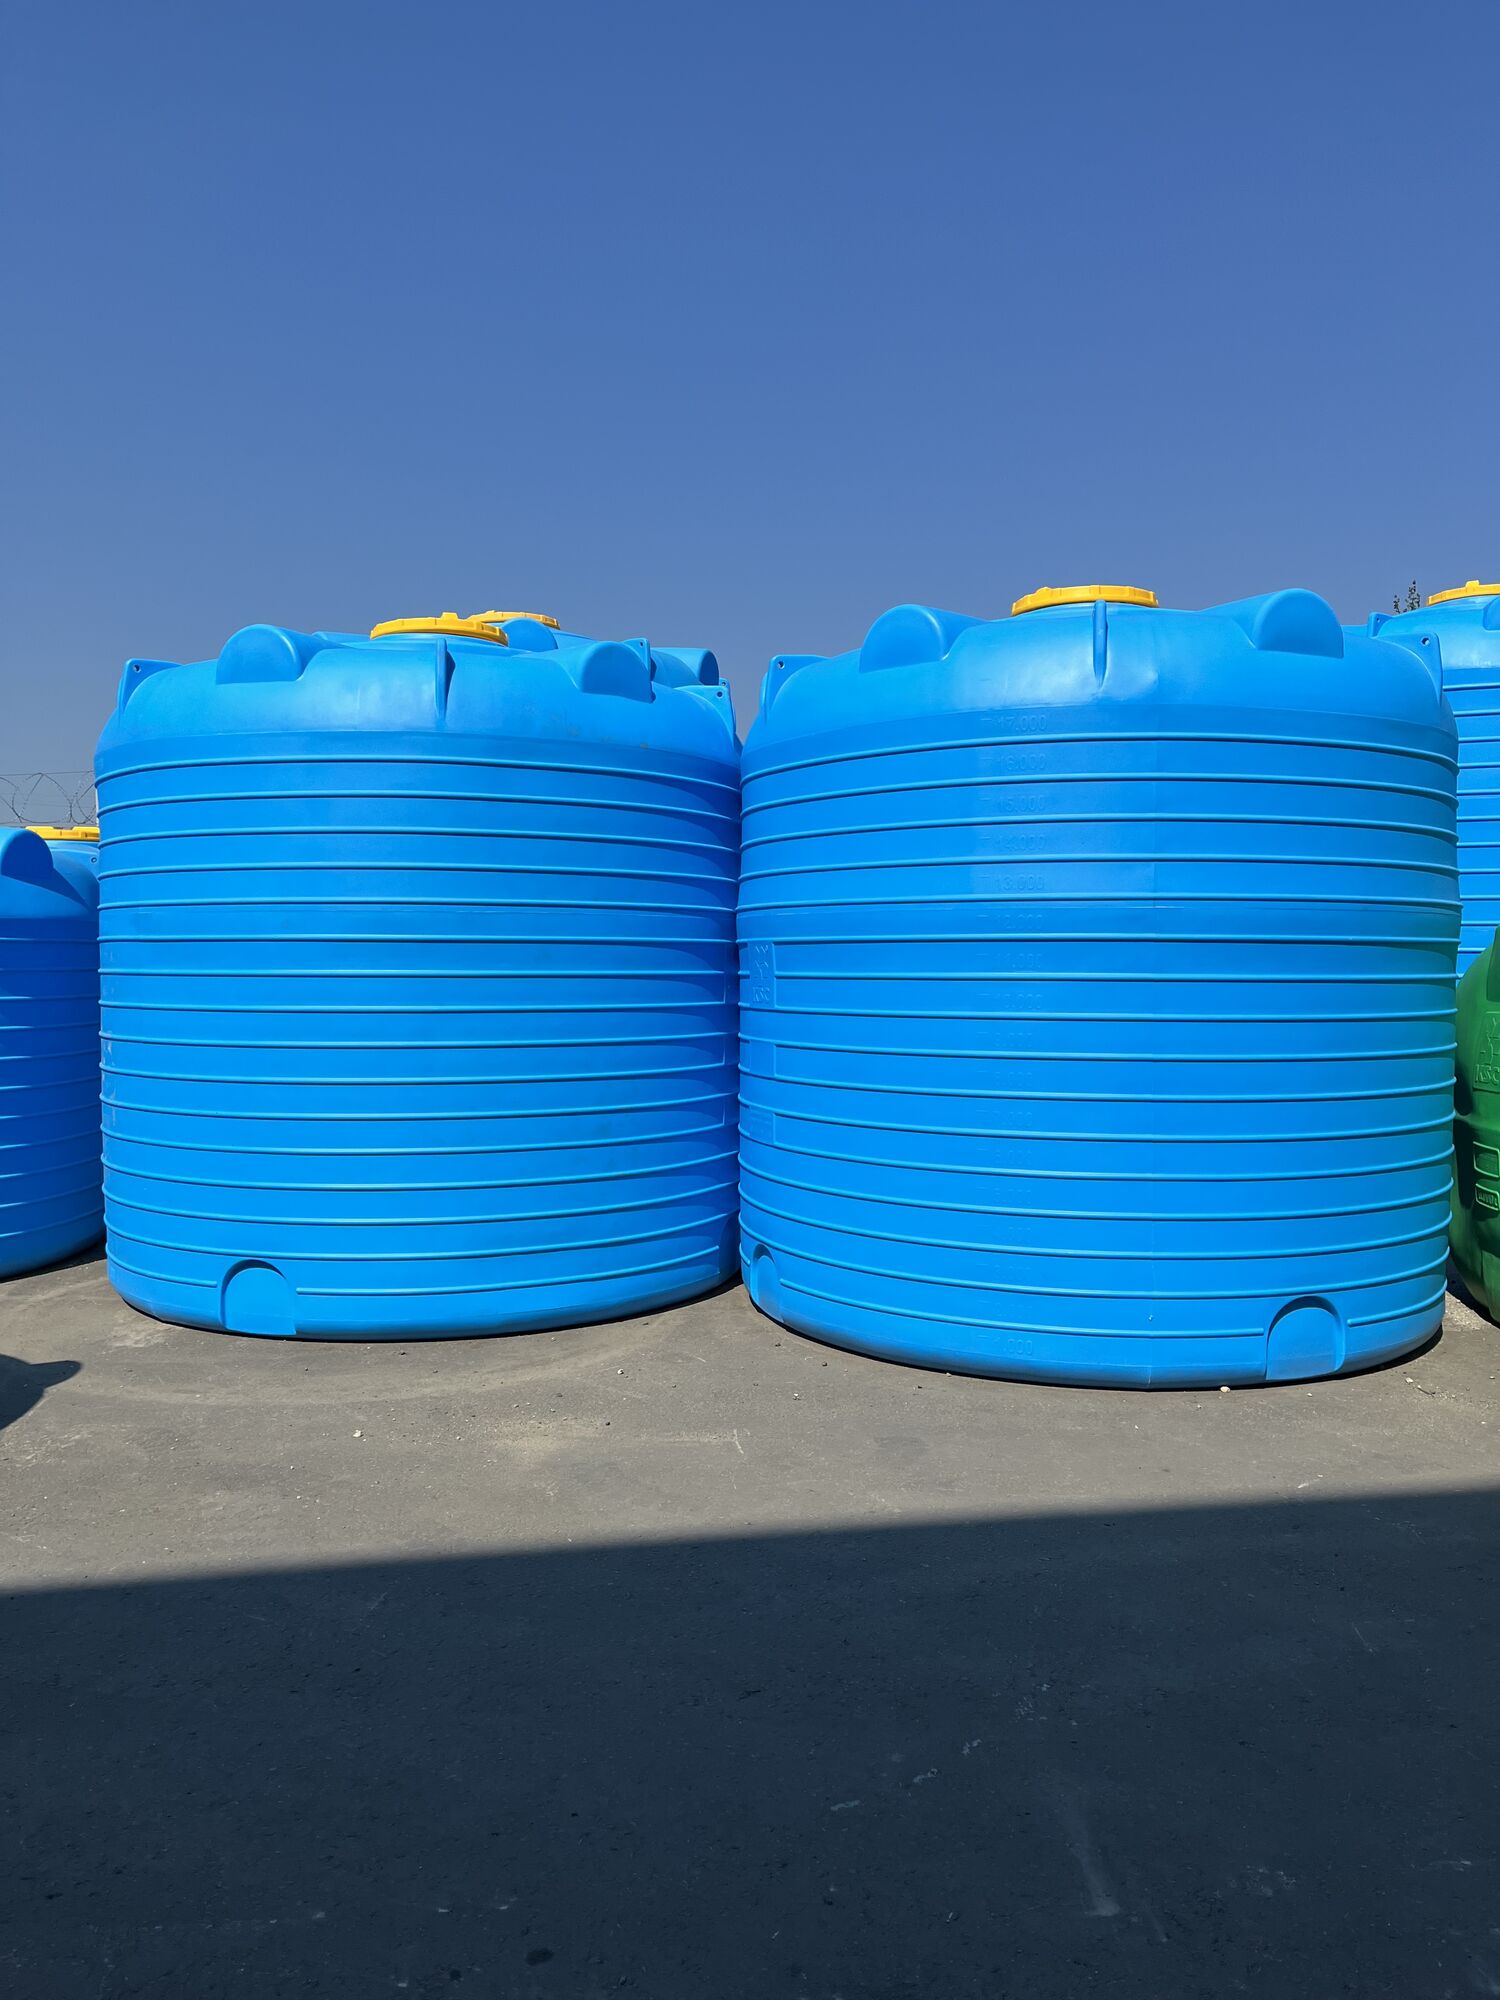 Бочка для полива пластиковая 20 м3 -20000 литров, капельного автополива, водоснабжения в СНТ, дачных товариществах